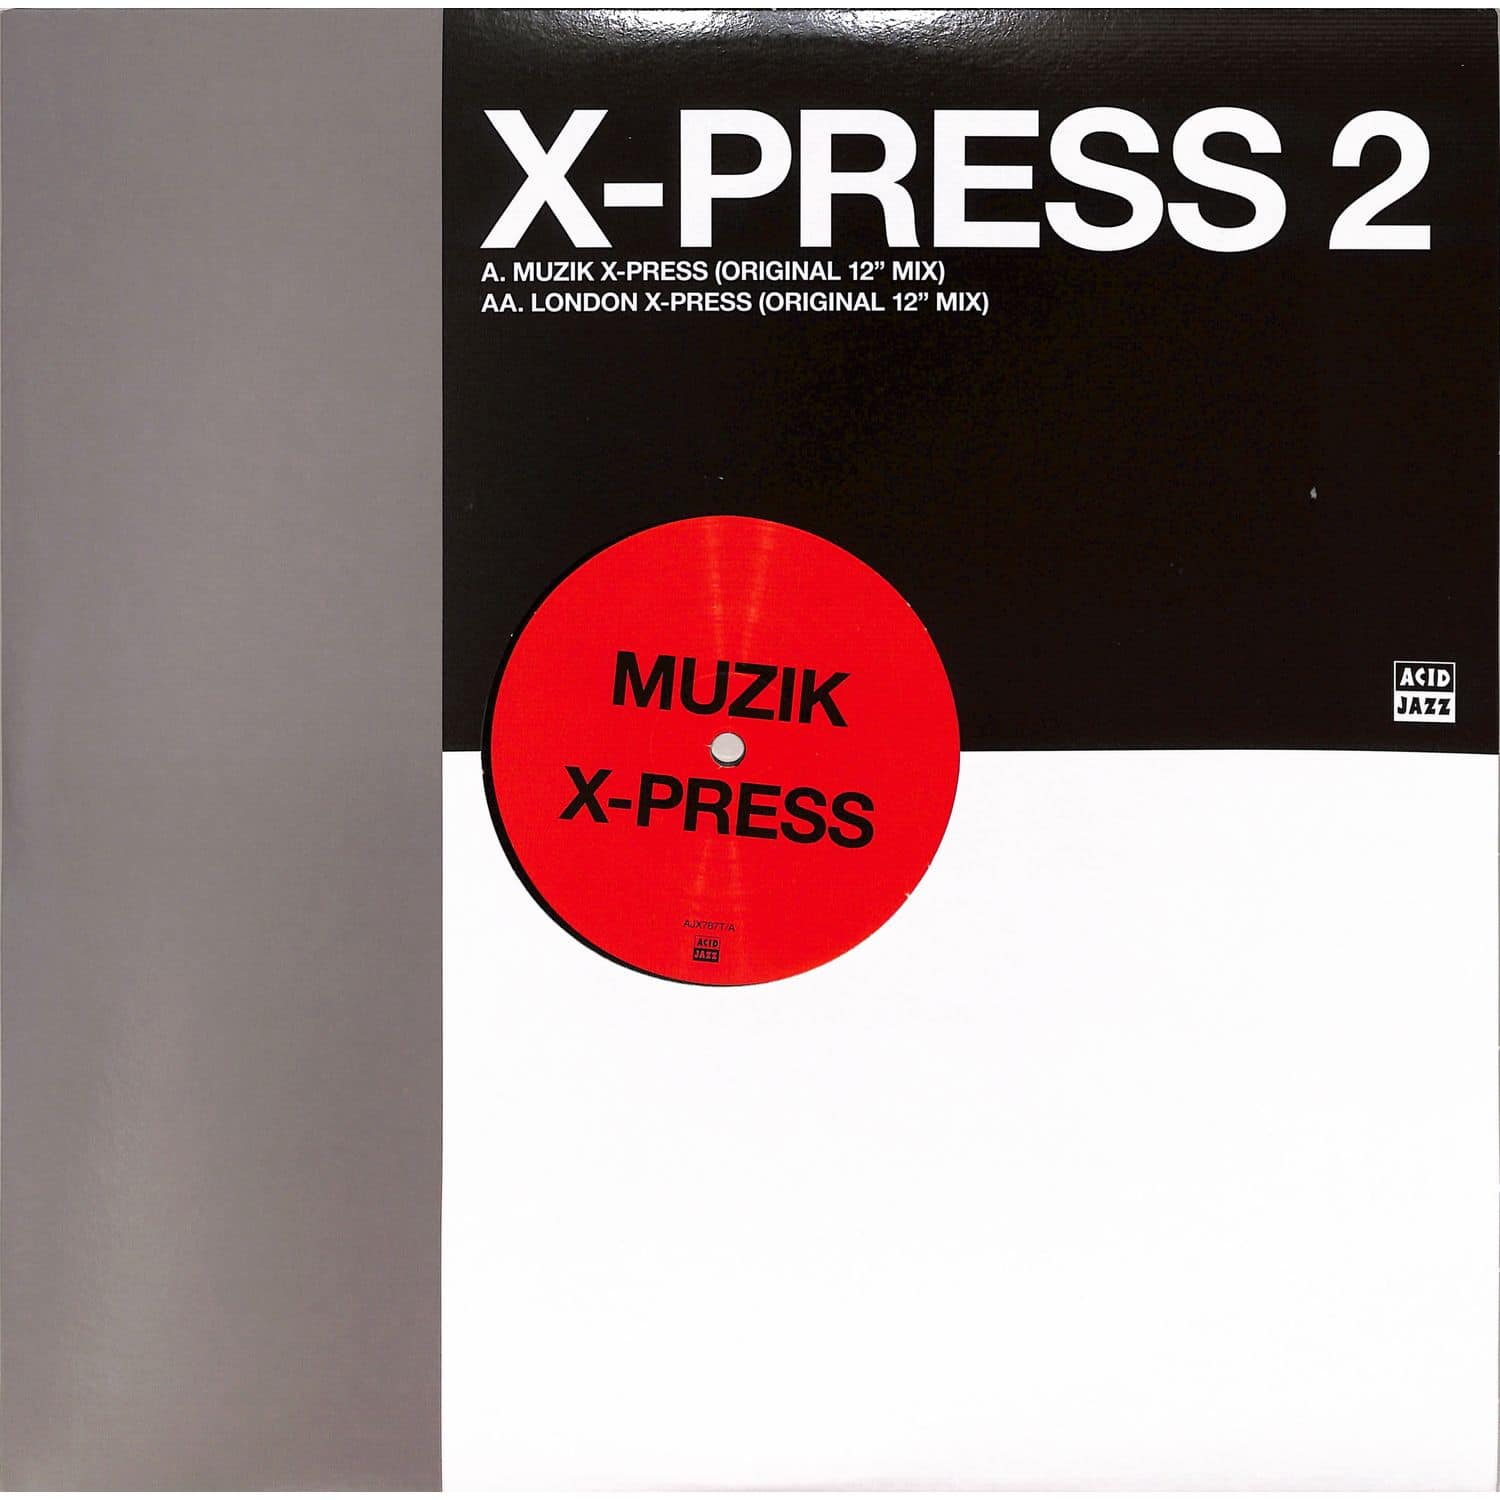 X-Press 2 - MUZIK X-PRESS / LONDON X-PRESS 